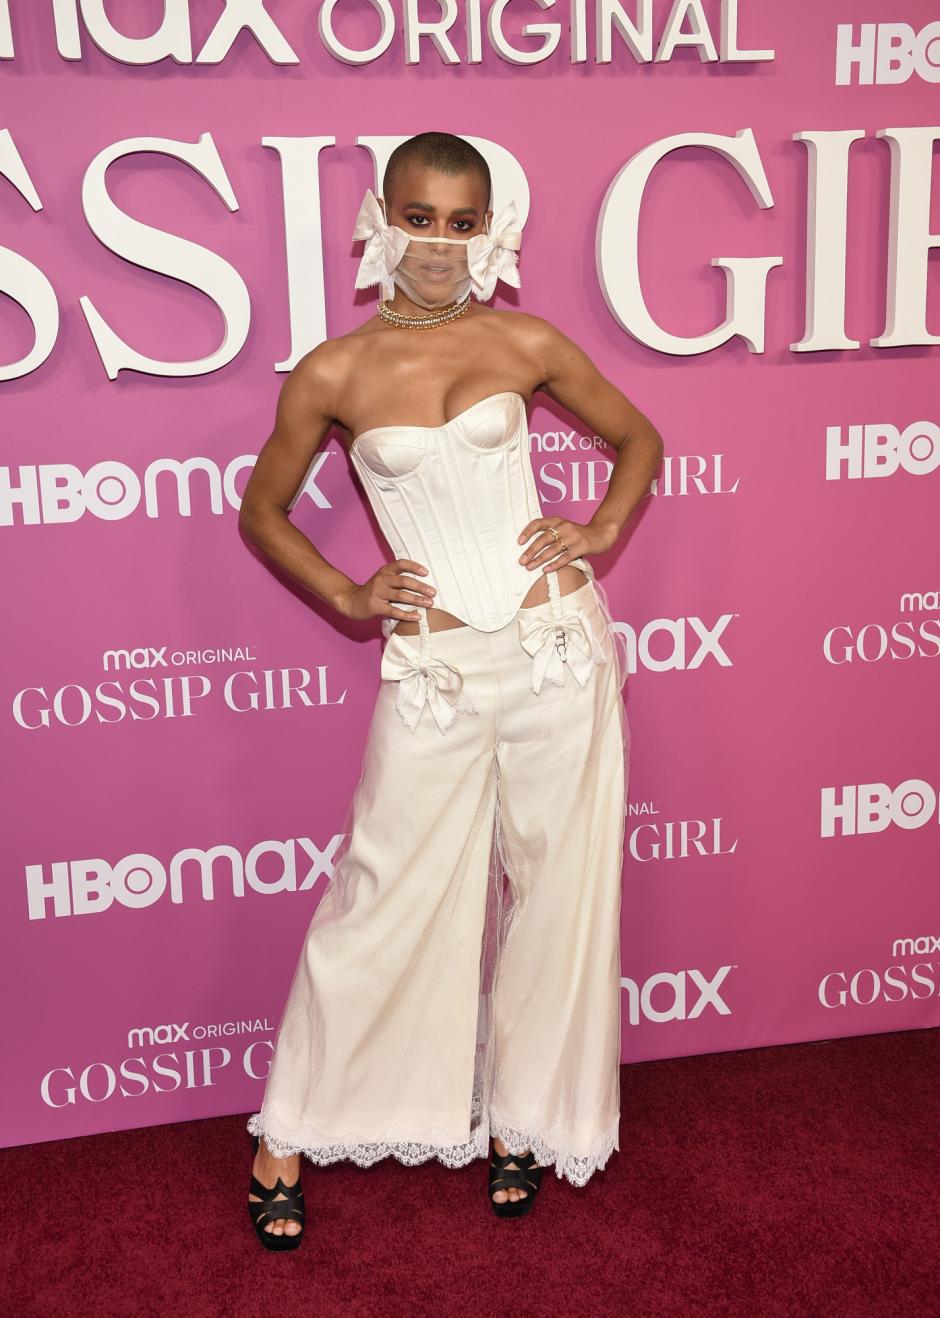 Actress Jordan Alexander attending the premiere of series "Gossip Girl" on Wednesday, June 30, 2021, in New York